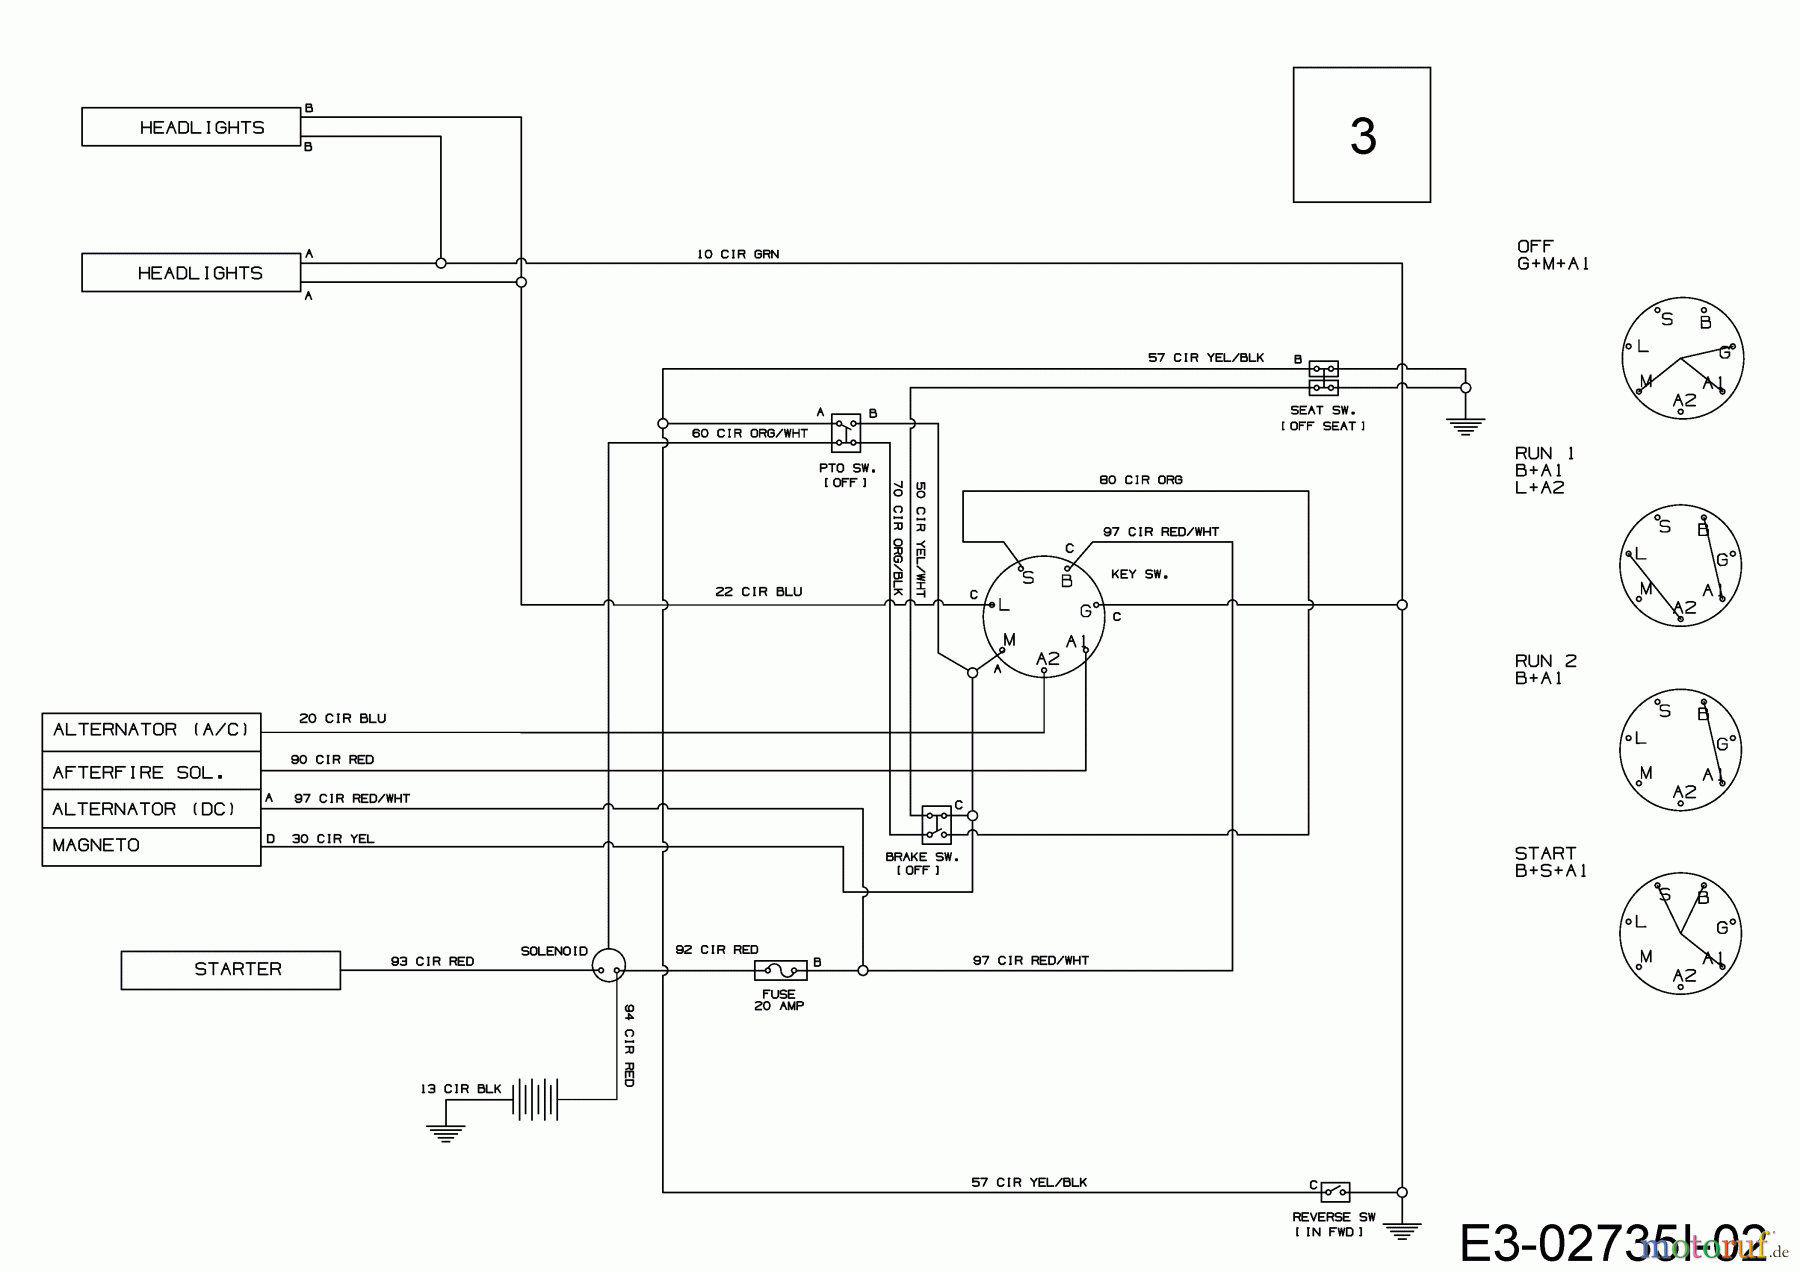  Cmi Lawn tractors 96-125 13HH765F620  (2019) Wiring diagram